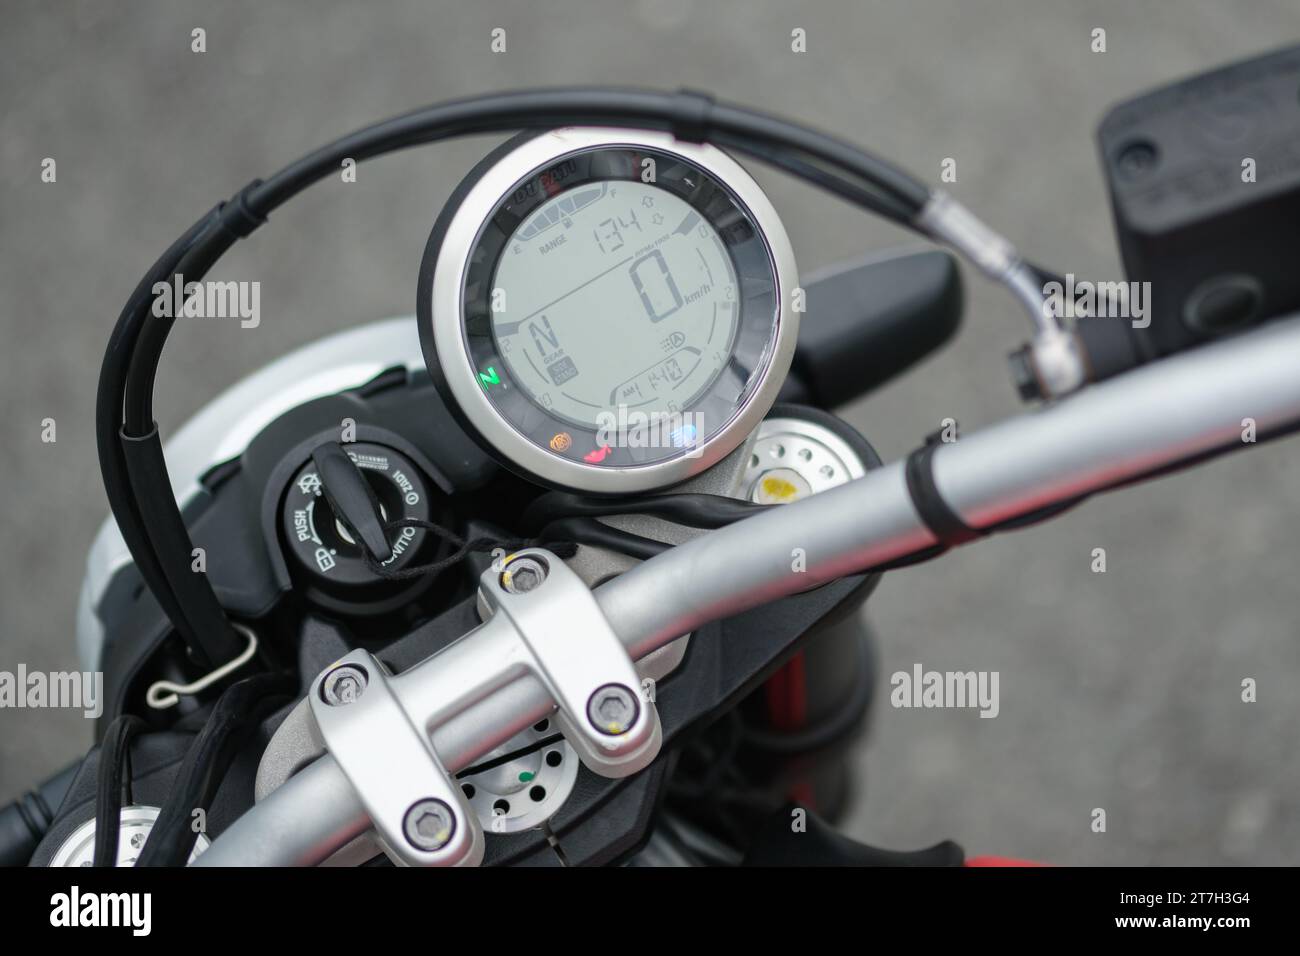 HCMC, VN - Ducati Scrambler pour usage éditorial Banque D'Images